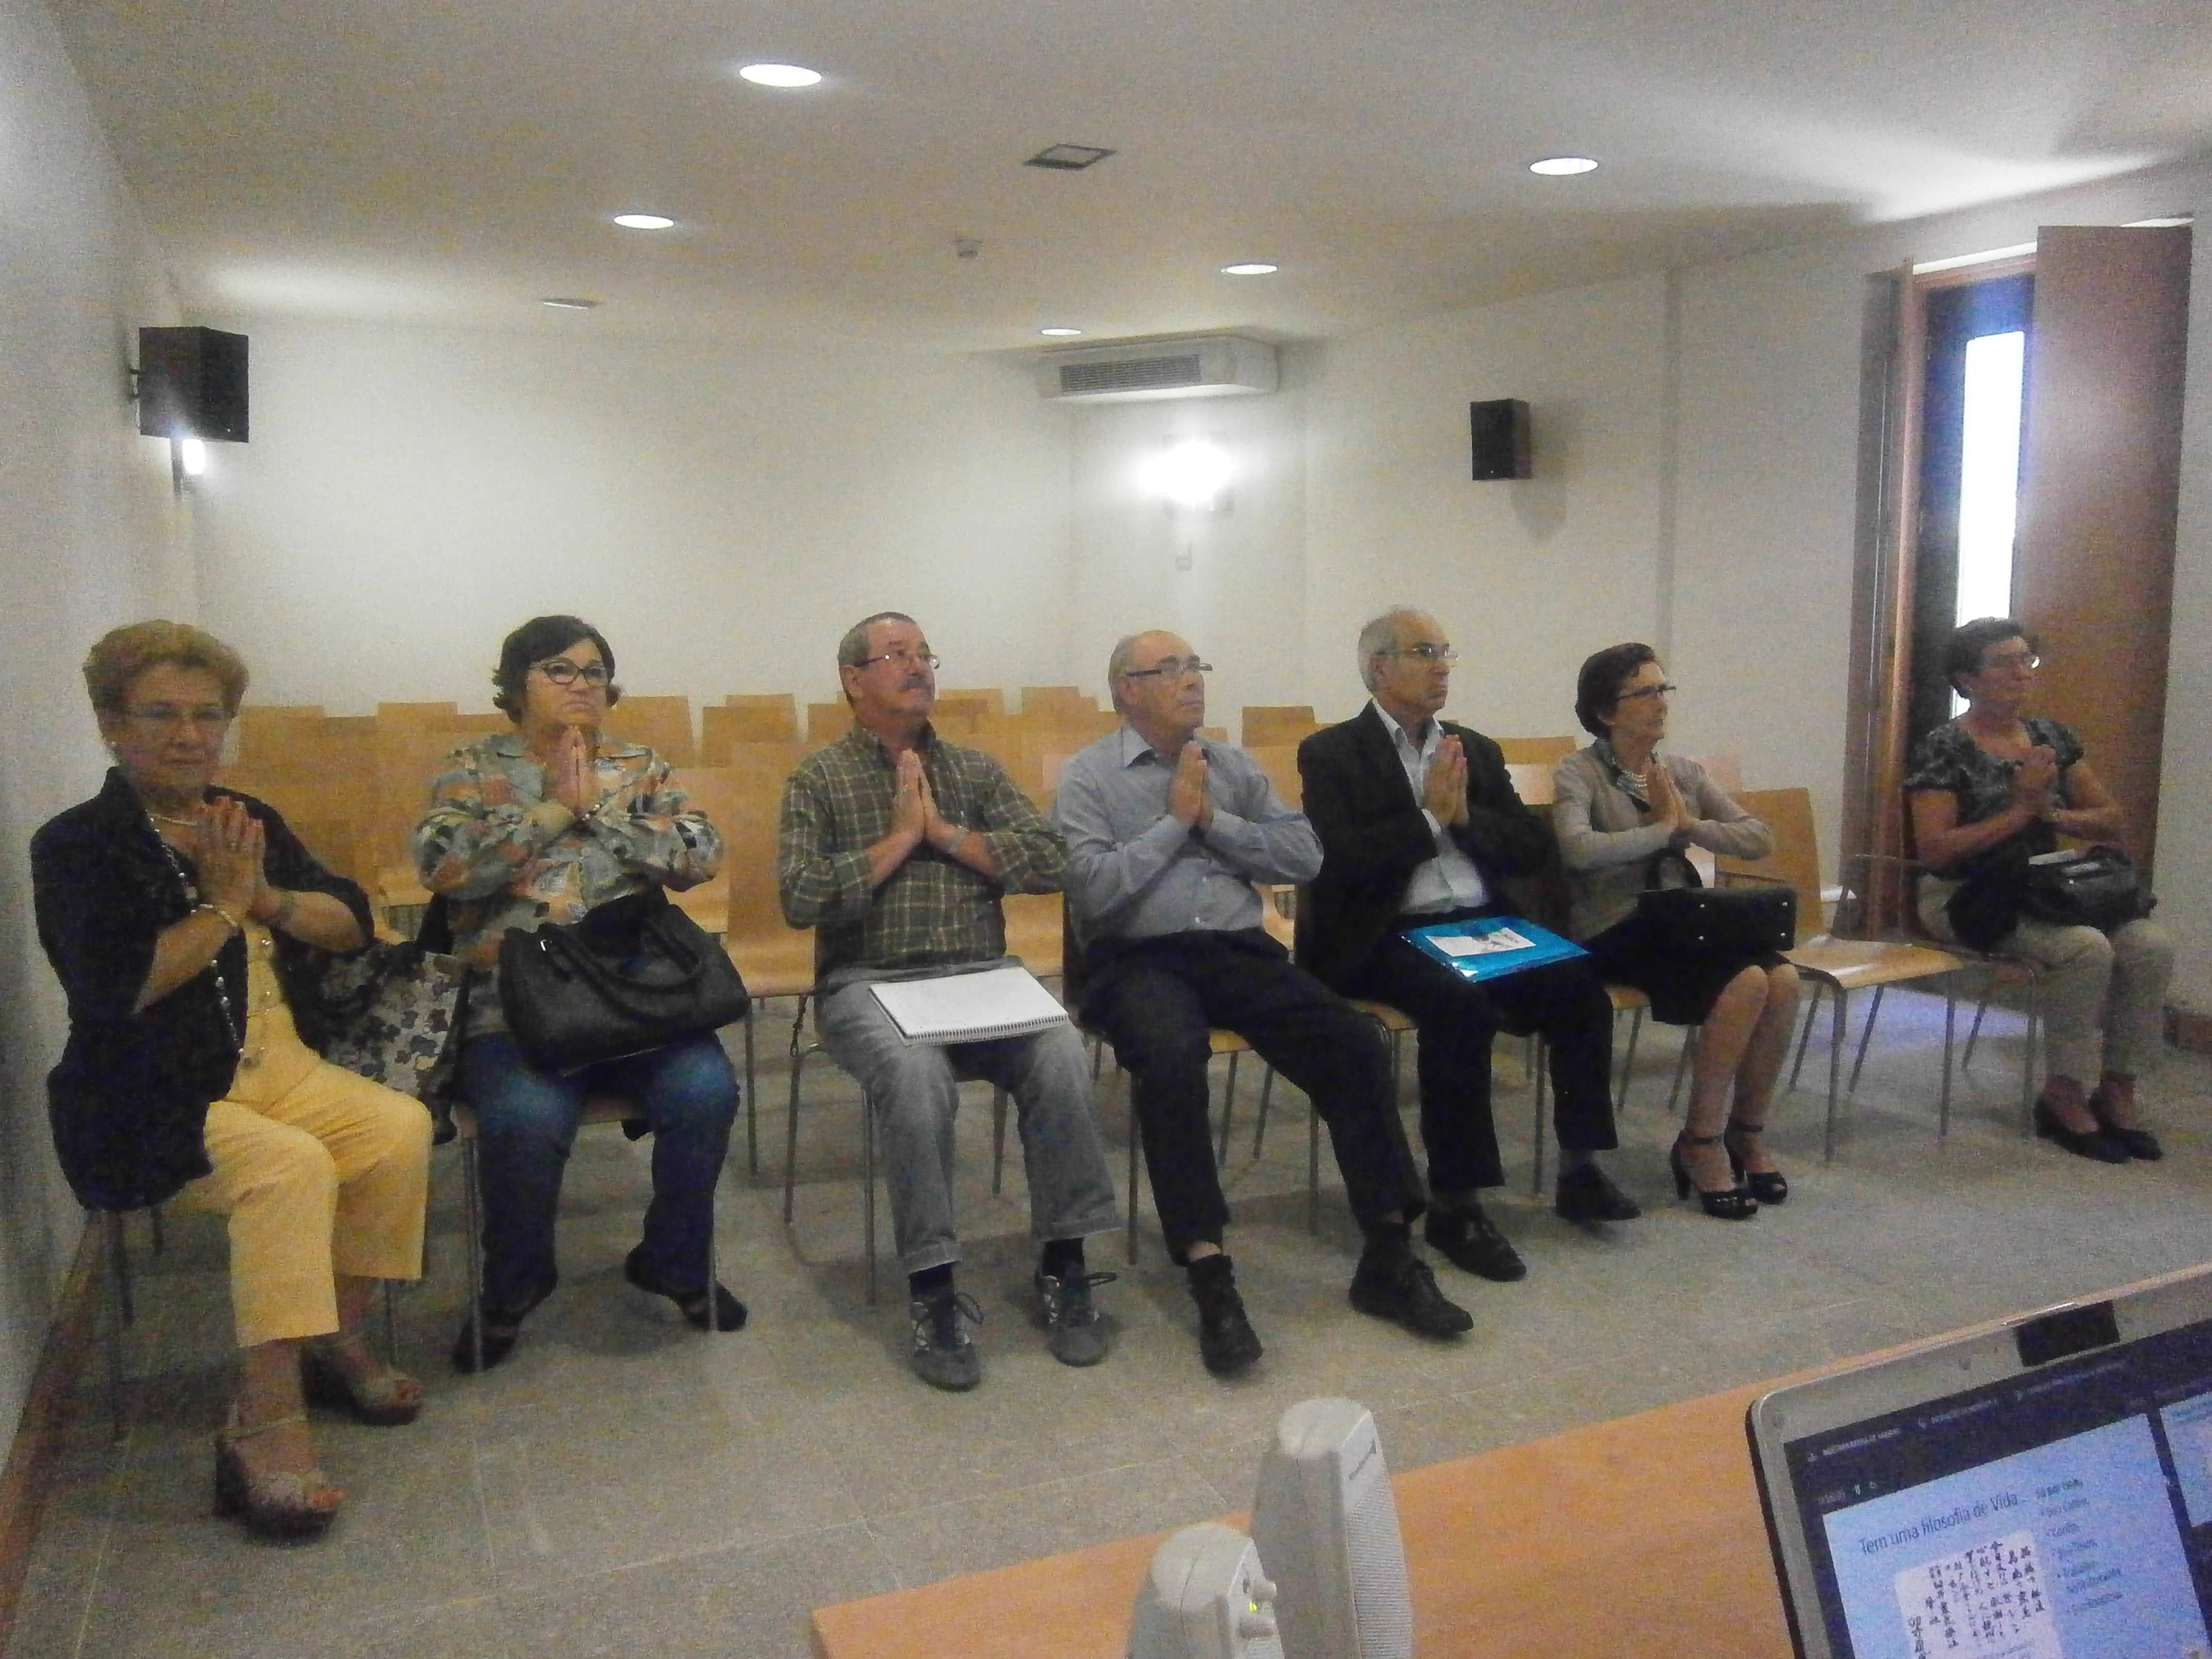 Palestra sobre o Reiki, na Universidade Sénior de Vila Meã